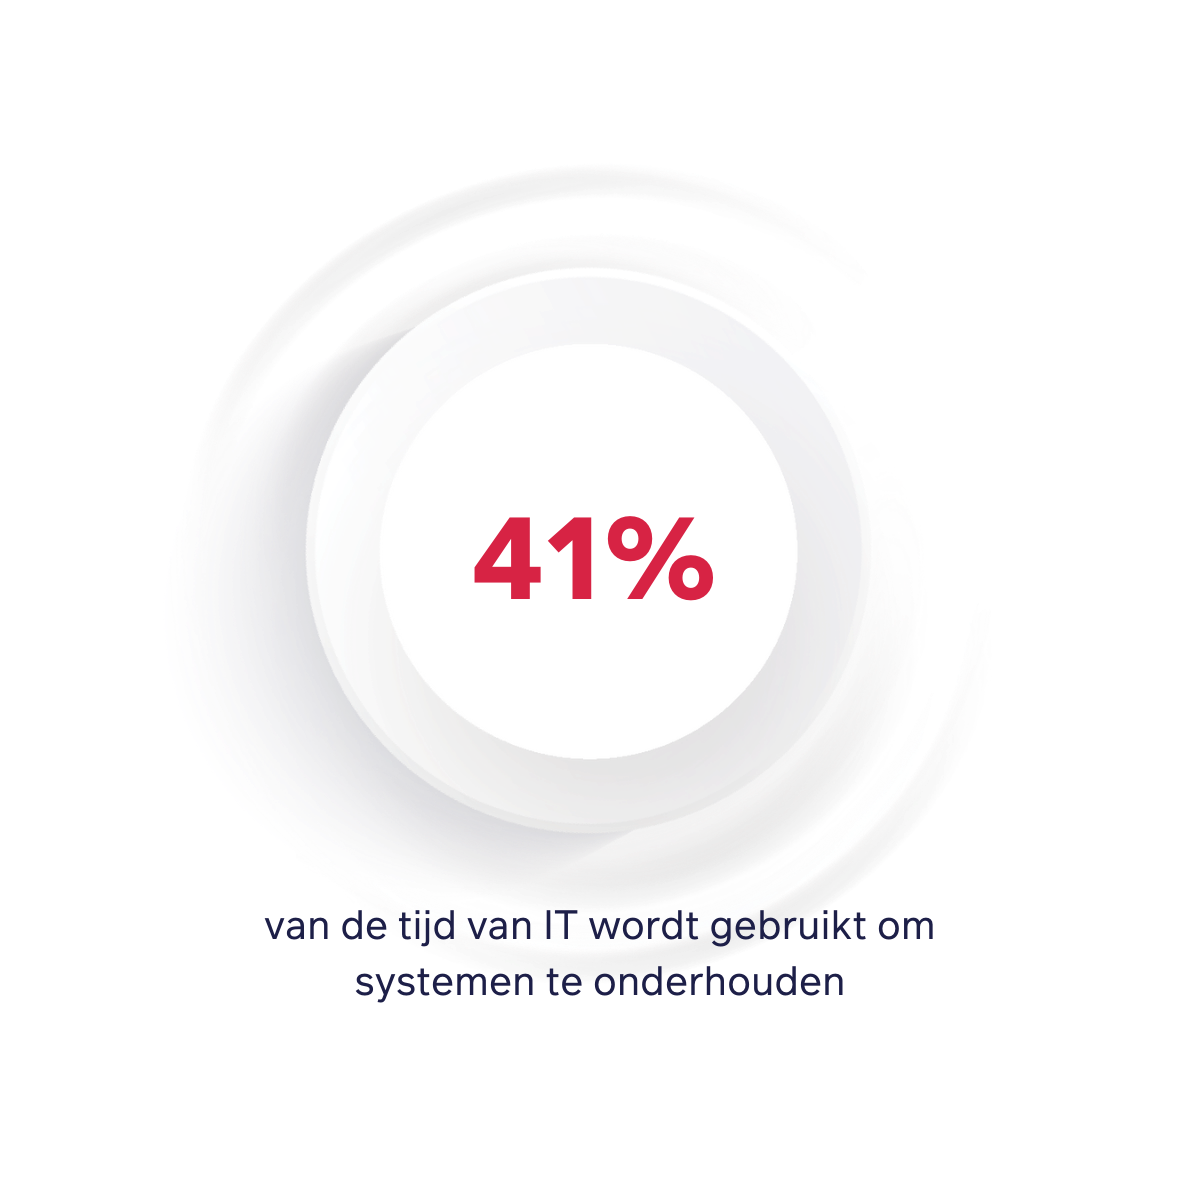 41% van de tijd van IT wordt gebruikt om systemen te onderhouden